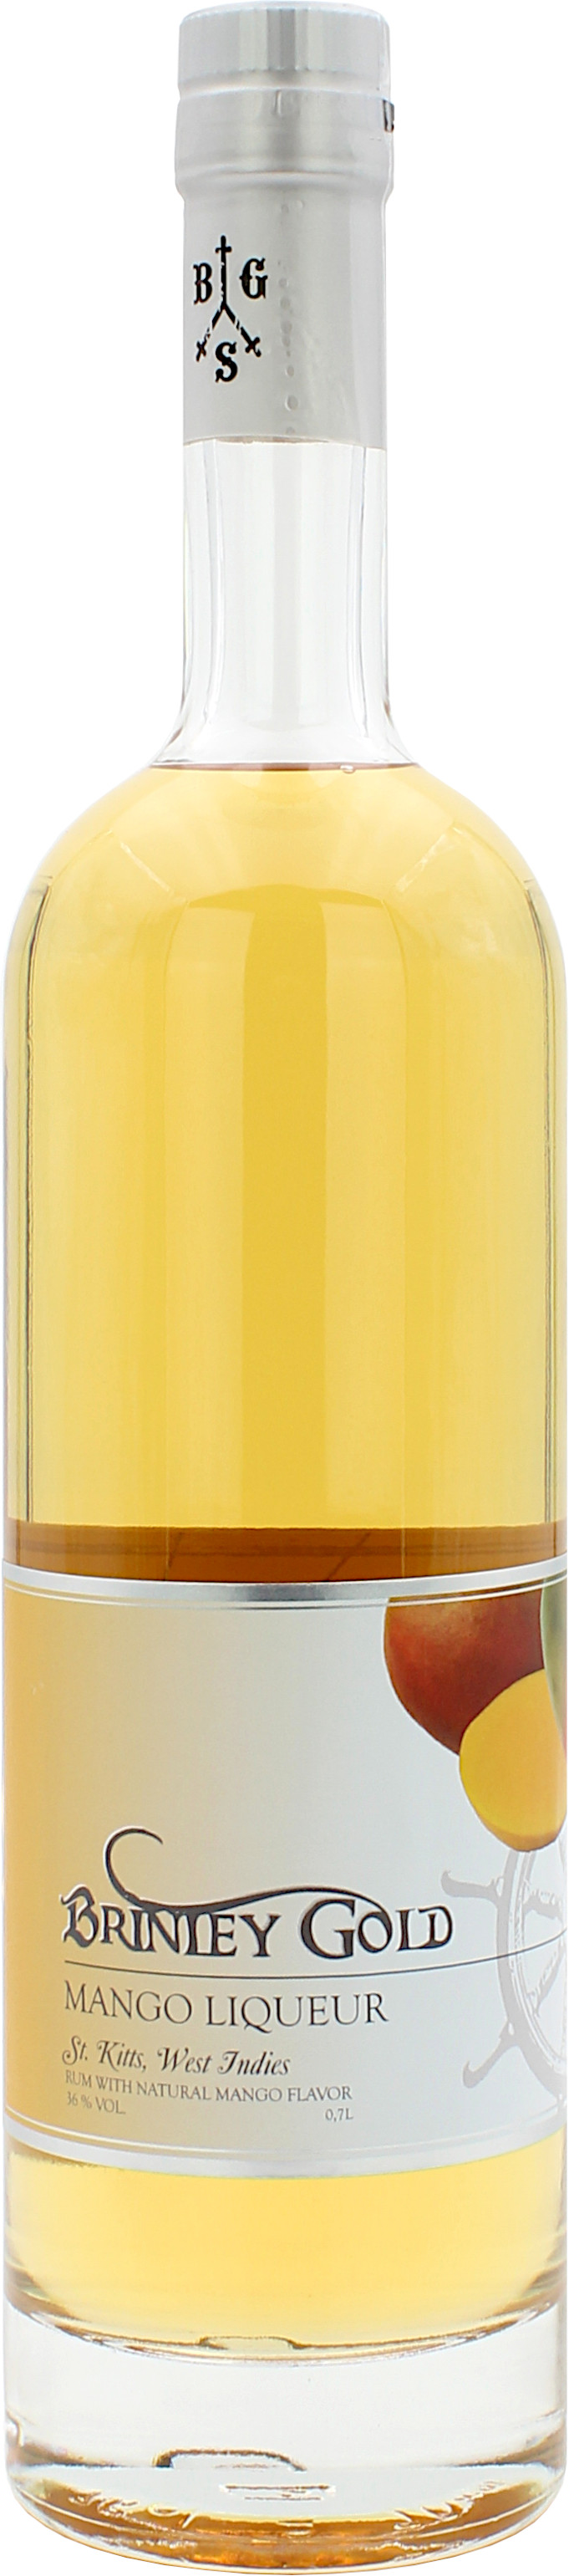 Brinley Gold Mango Liqueur 36.0% 0,7l